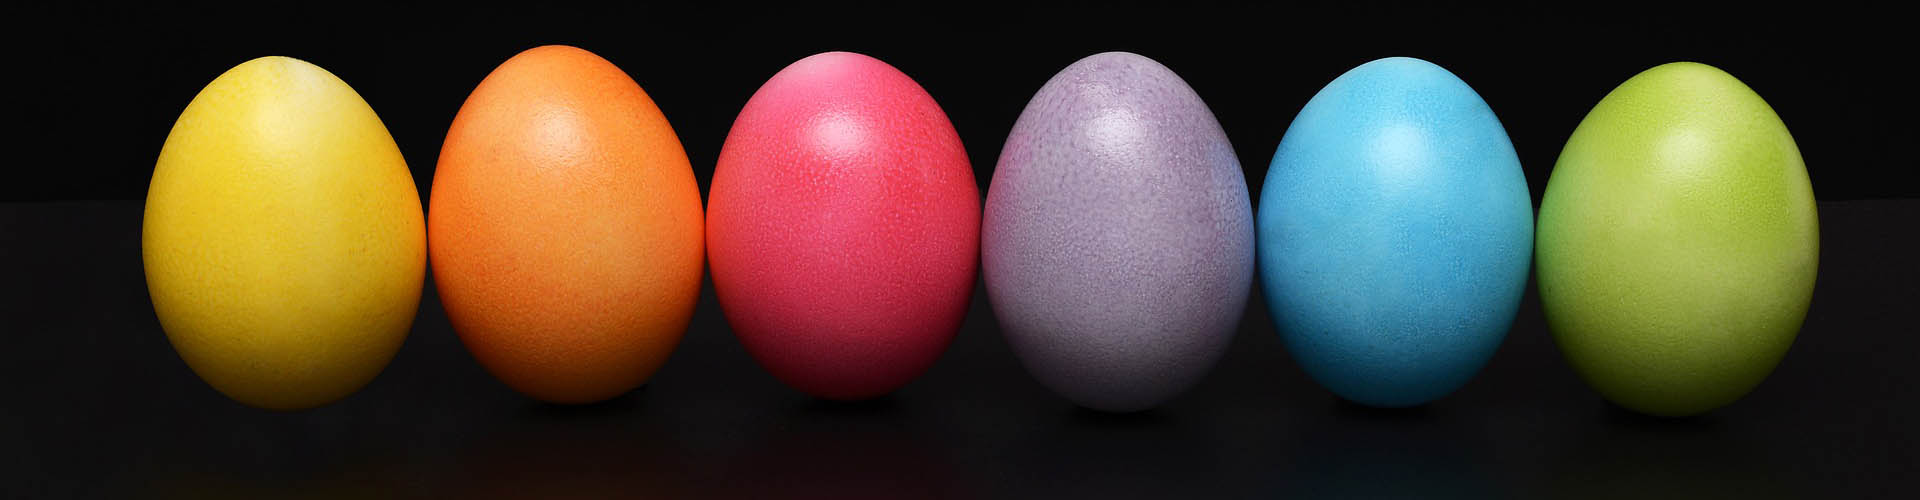 Pasqua Oltre All’Uovo C’è Di Più